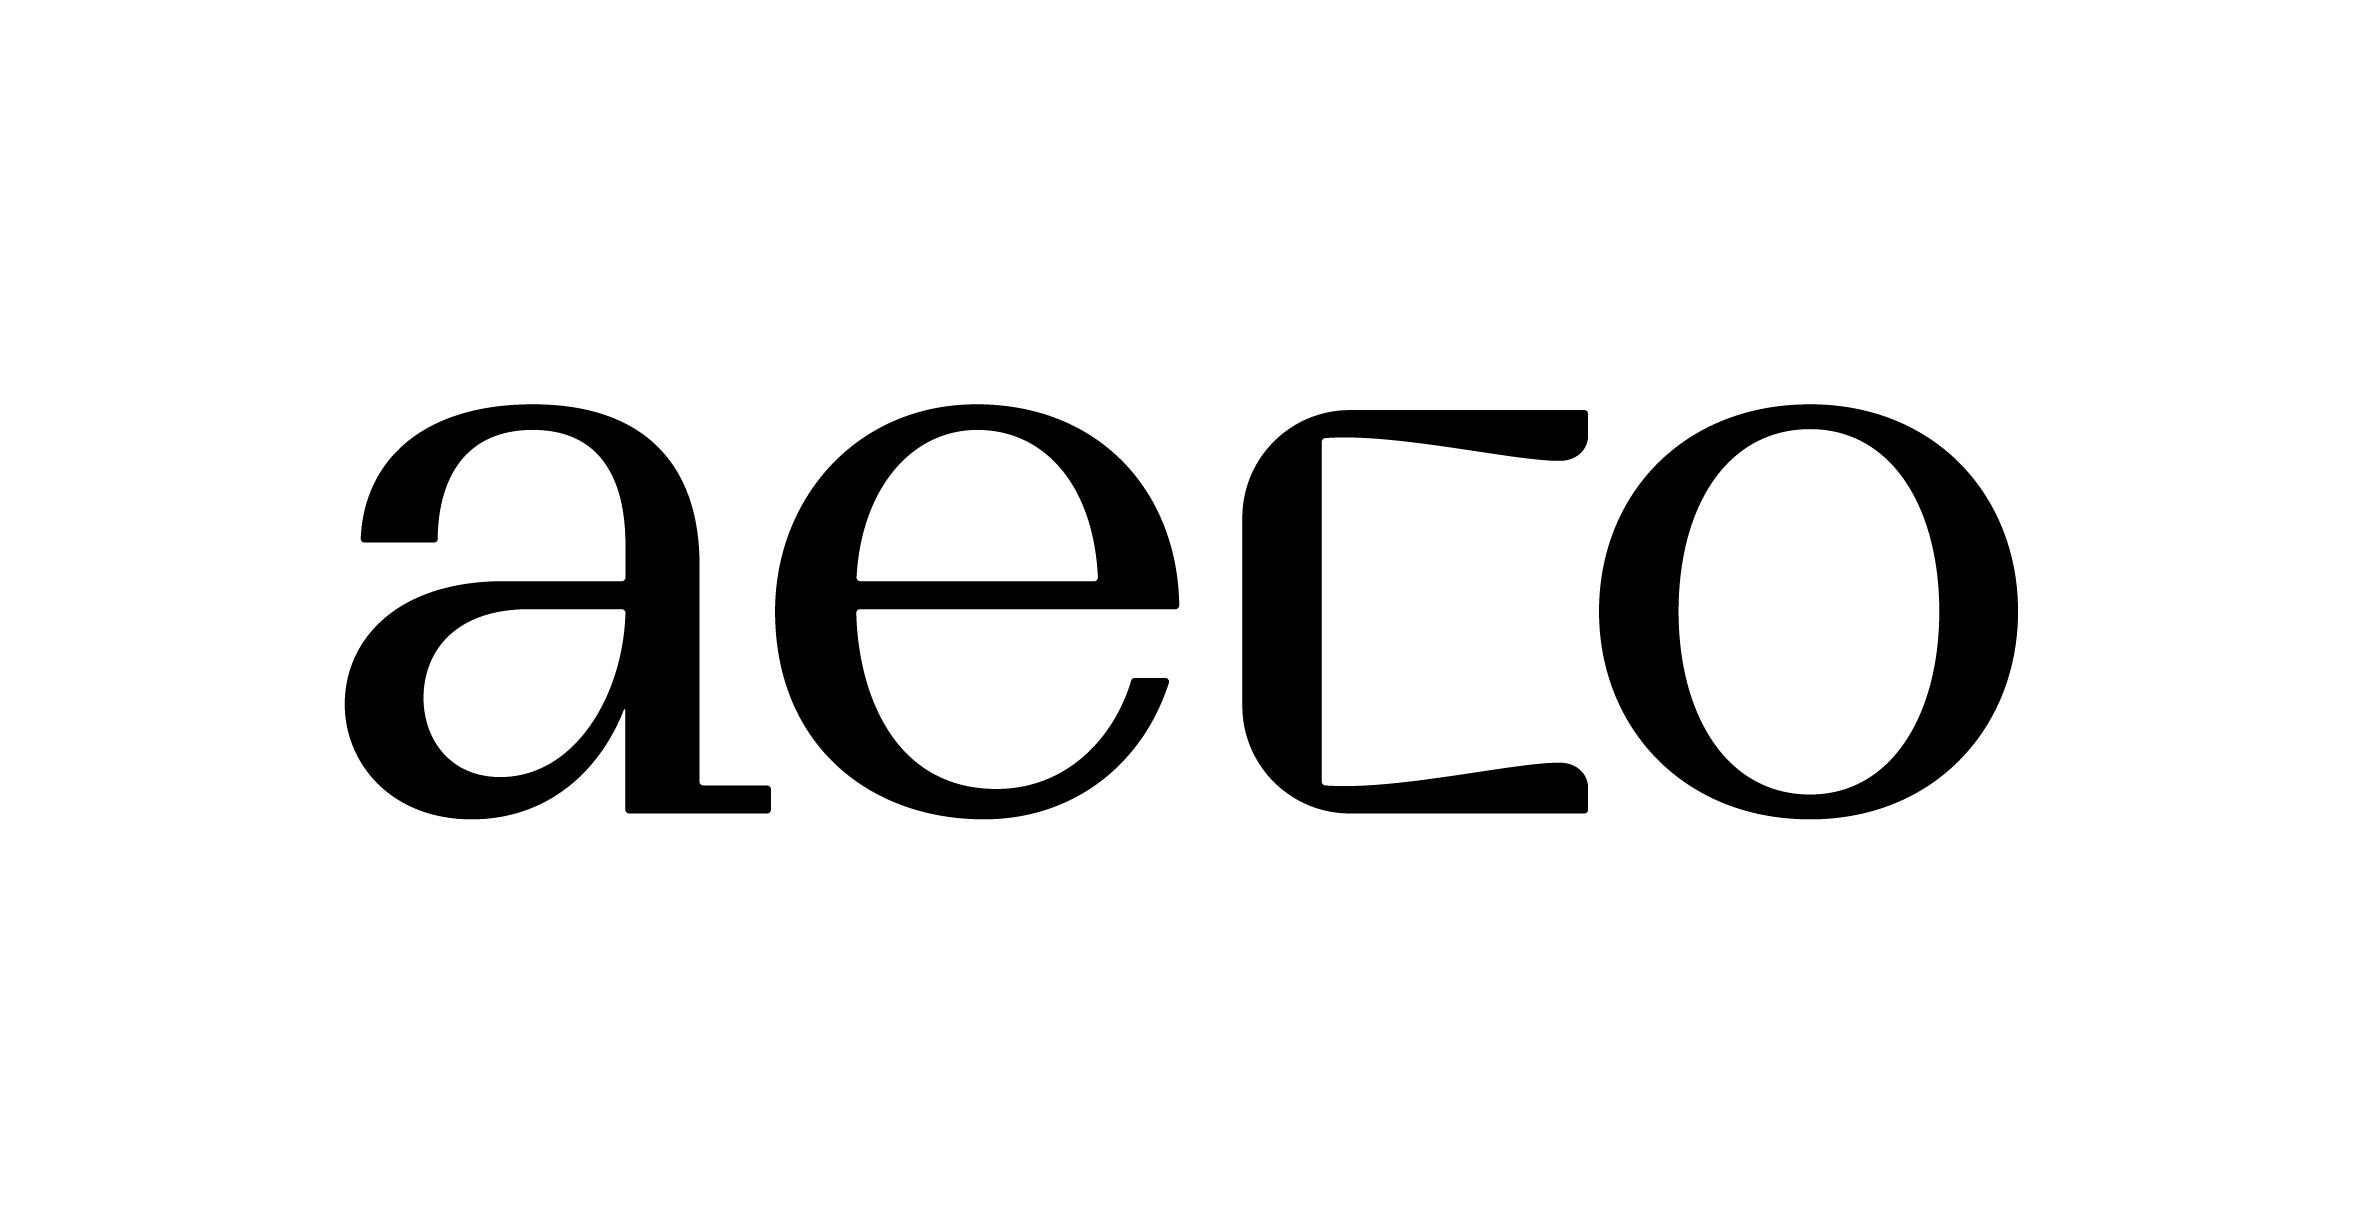 AECO logo